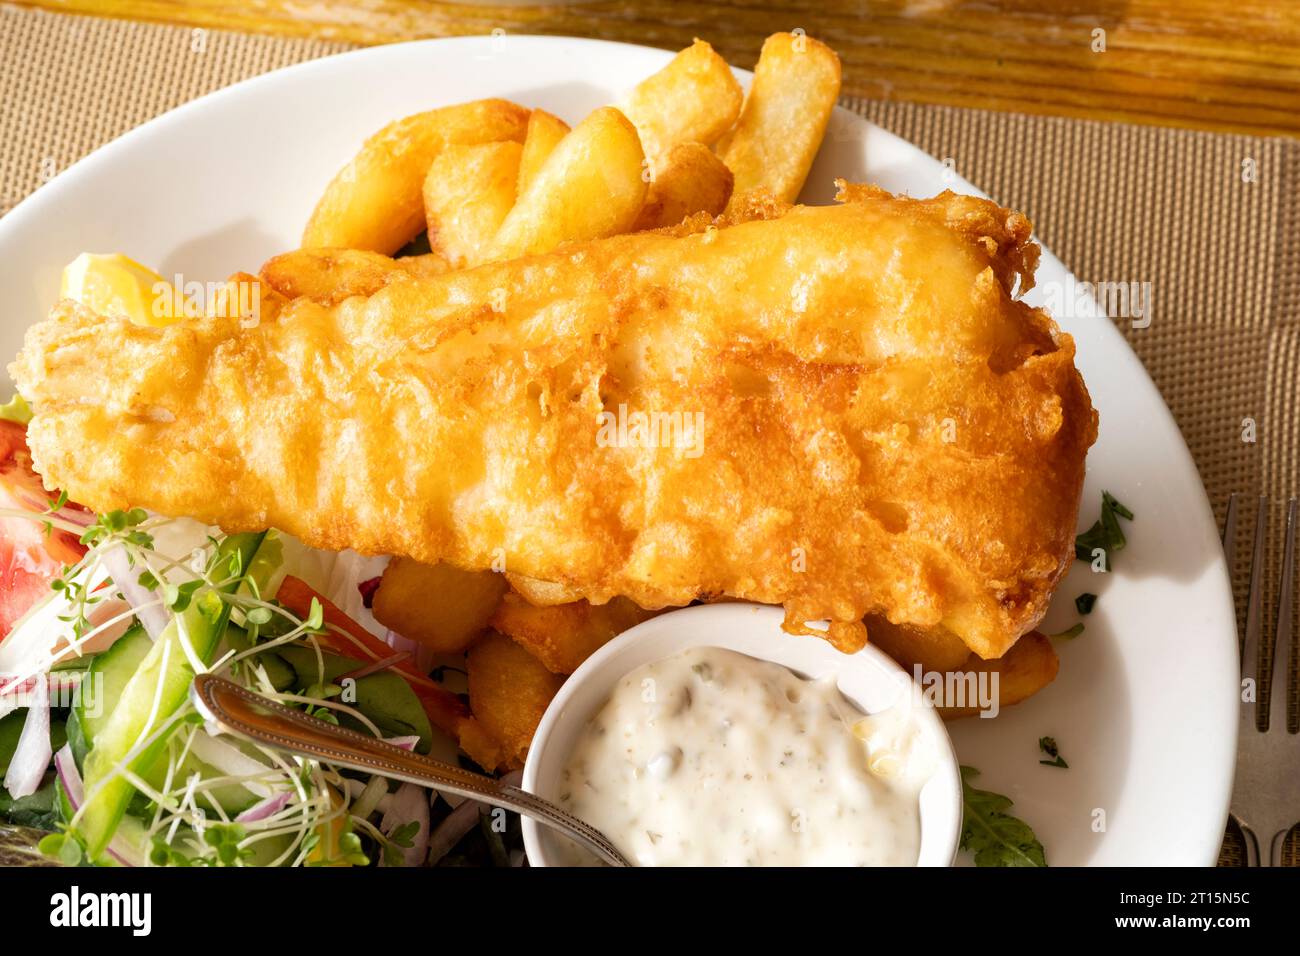 Un tradizionale pasto inglese a base di pesce e patatine fritte servito su un tavolo in un ristorante Fish and Chip. Le piastre contengono Co e patatine fritte fresche Foto Stock